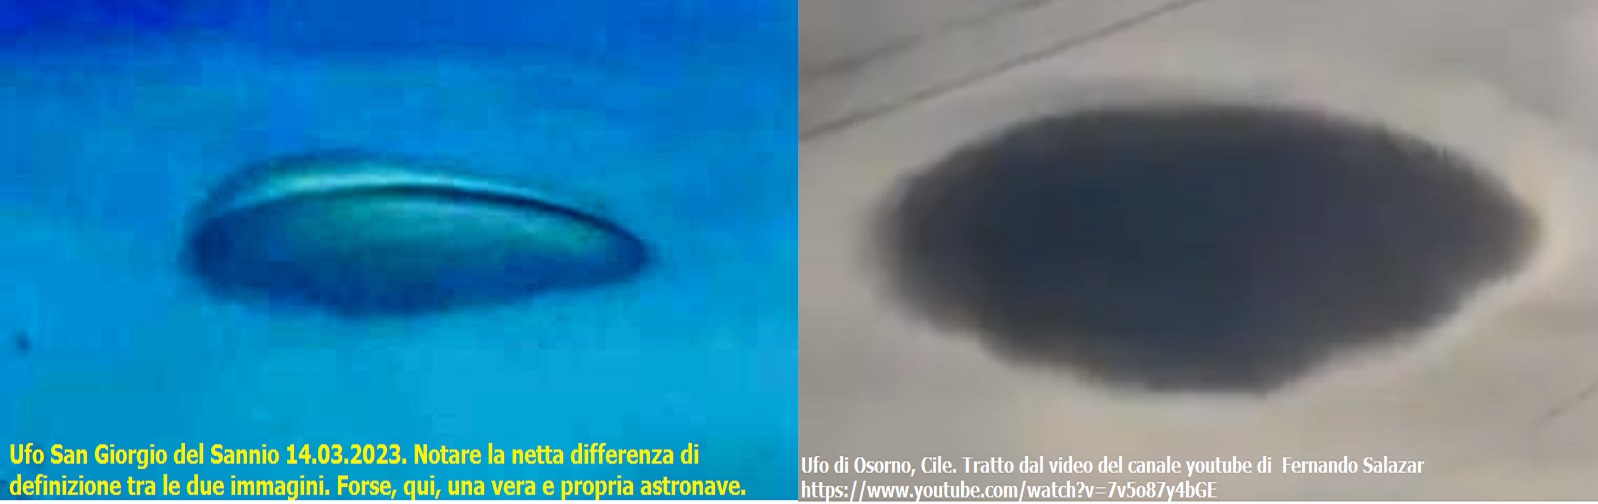 UFO SAN GIORGIO DEL SANNIO 14.03.2023 E L'UFO DI OSORNO, CILE.